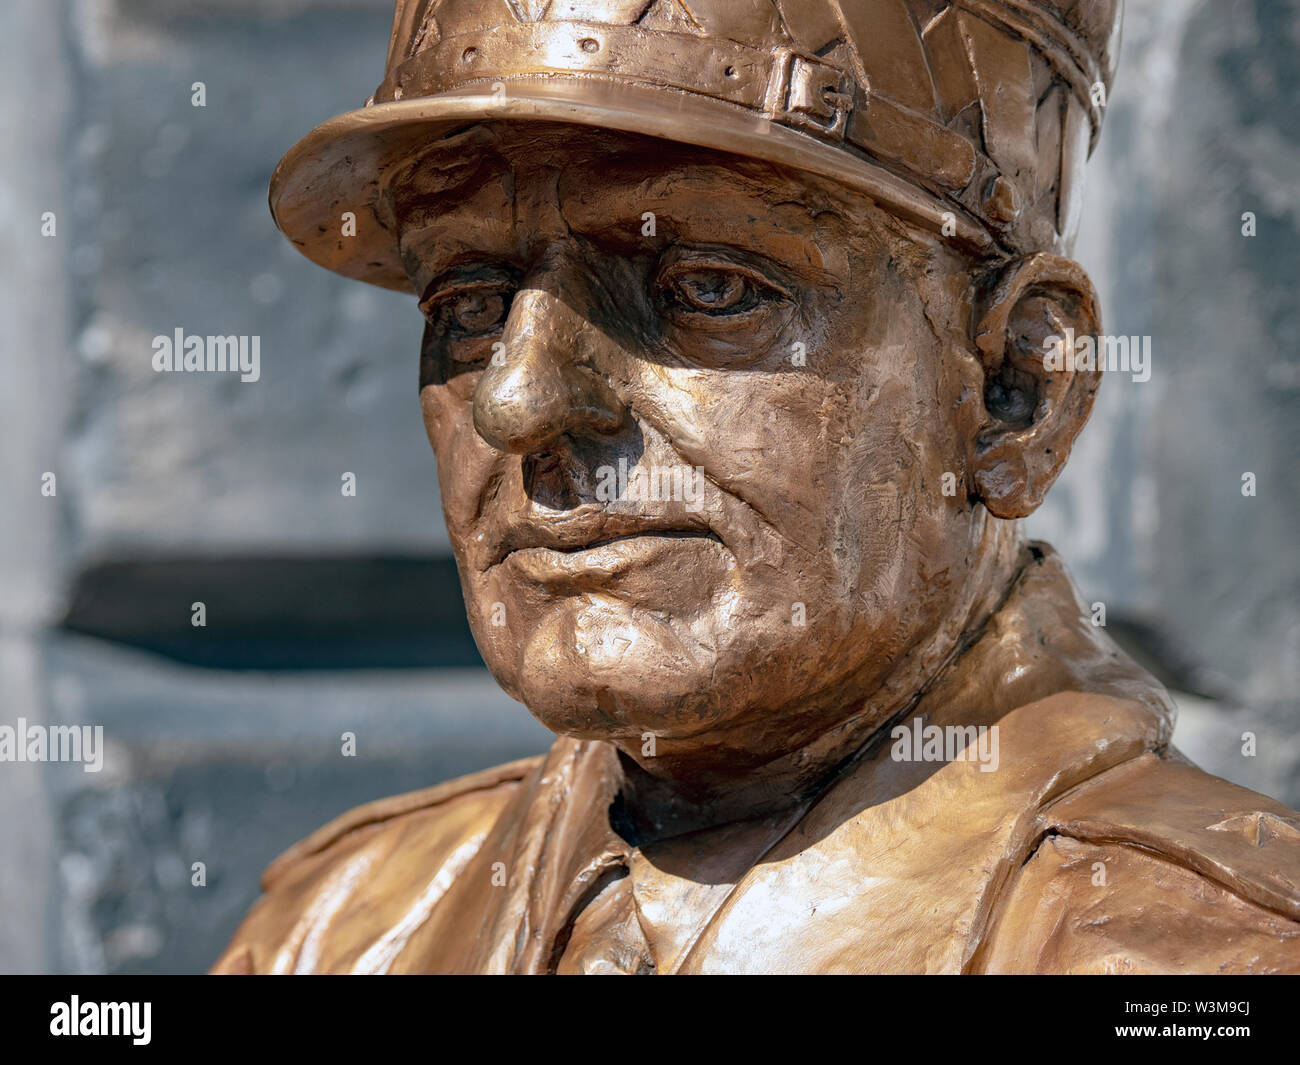 Dettaglio di una statua del generale Stanislaw Maczek, polacco eroe di guerra, presso il City Chambers, Royal Mile di Edimburgo, lo scultore fu Bronislaw Krzysztof. Foto Stock